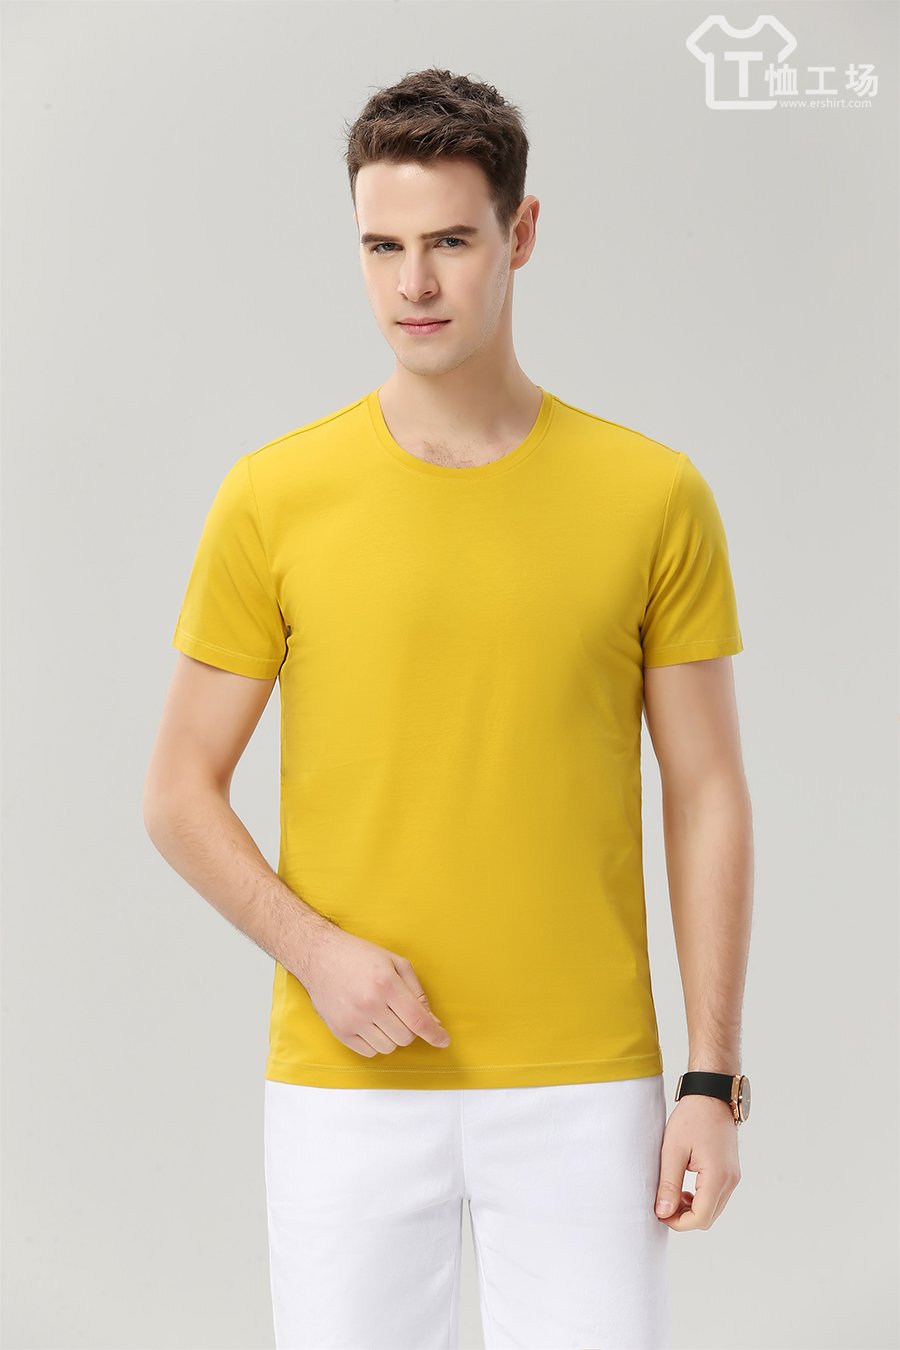 高档黄色T恤5